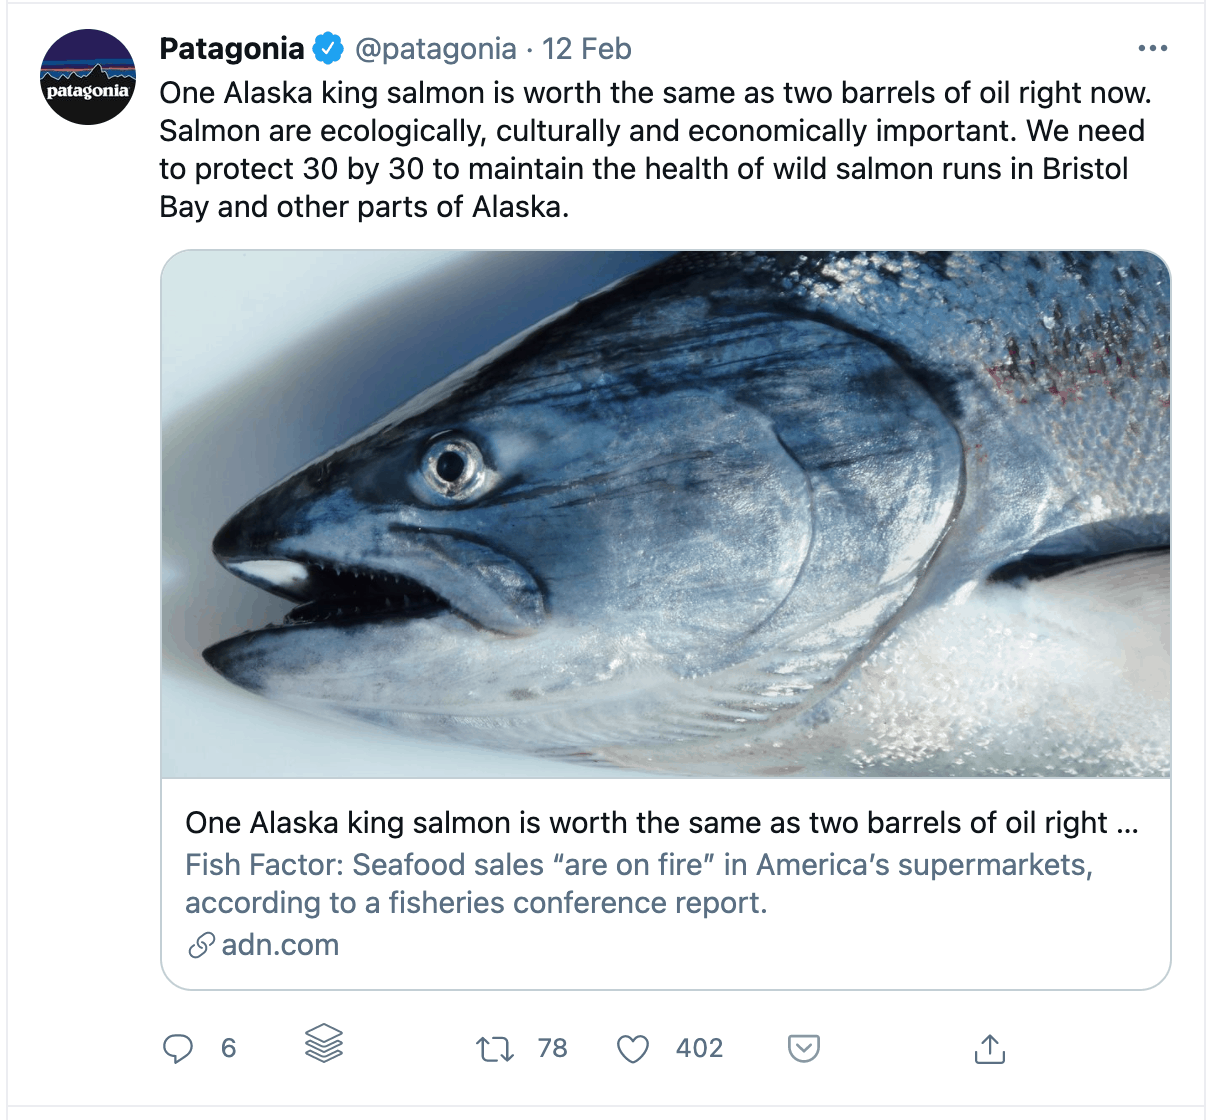 Patagonia's Tweet link thubnail